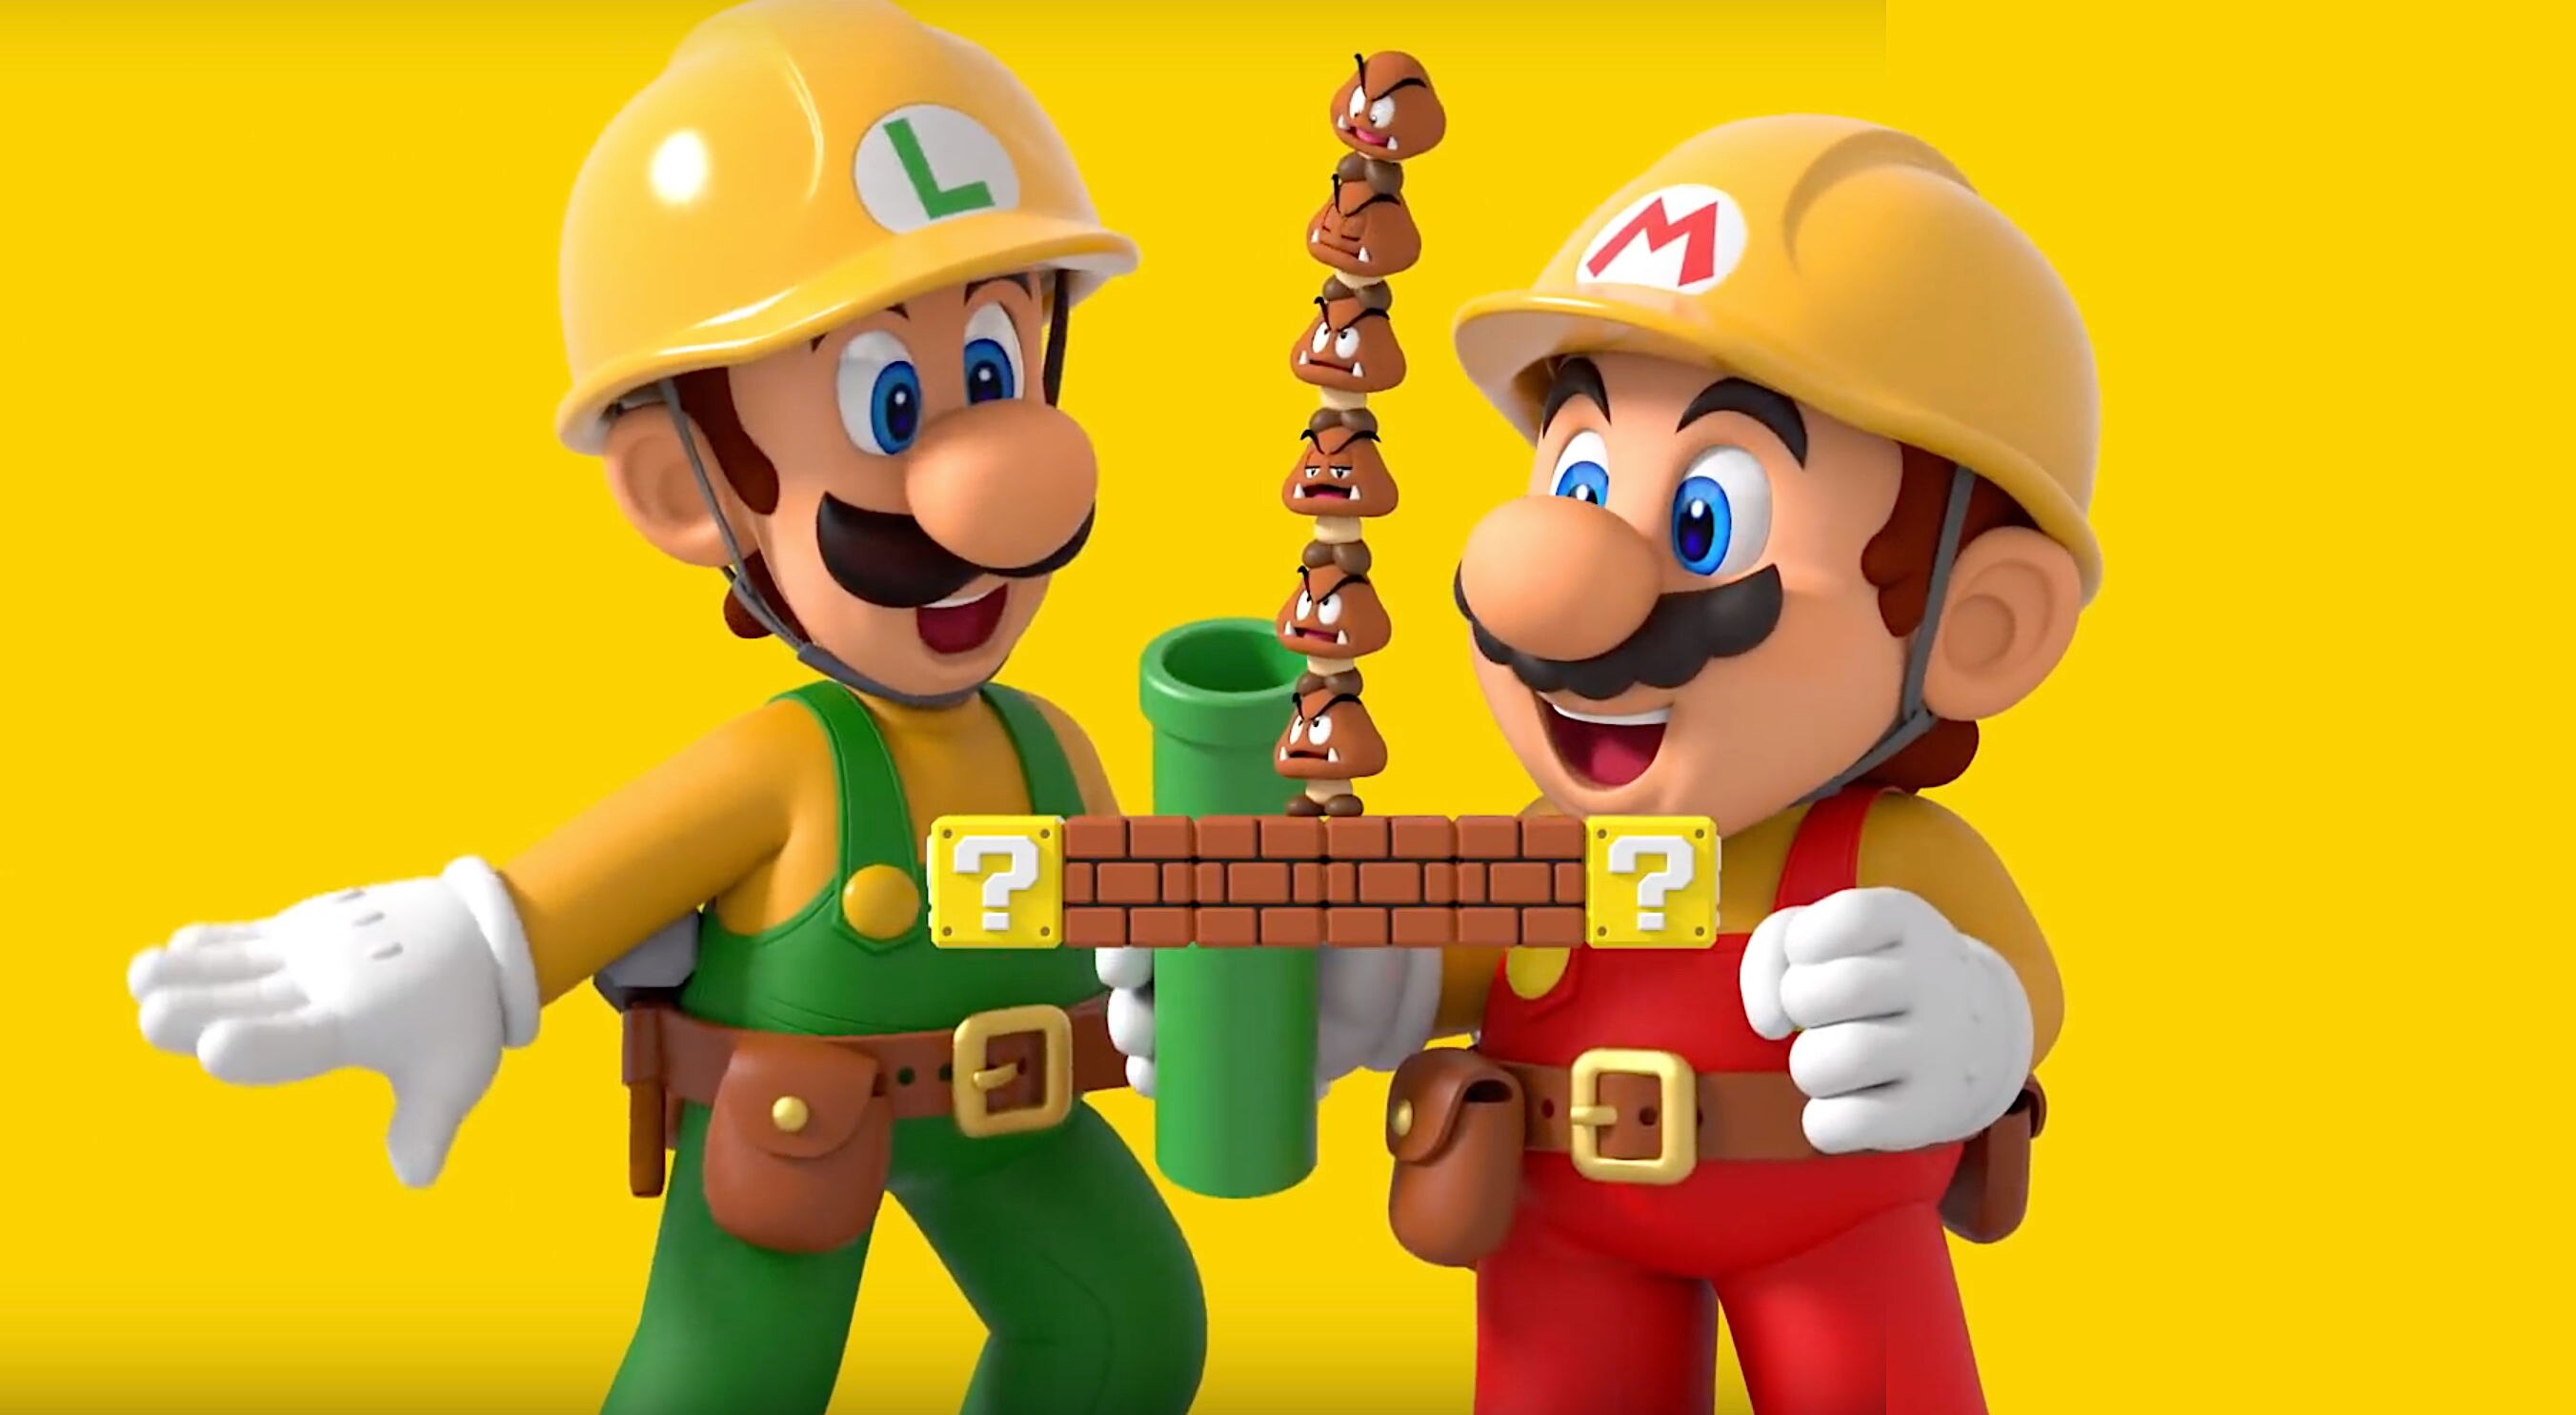 Luigi and Mario in Super Mario Maker 2